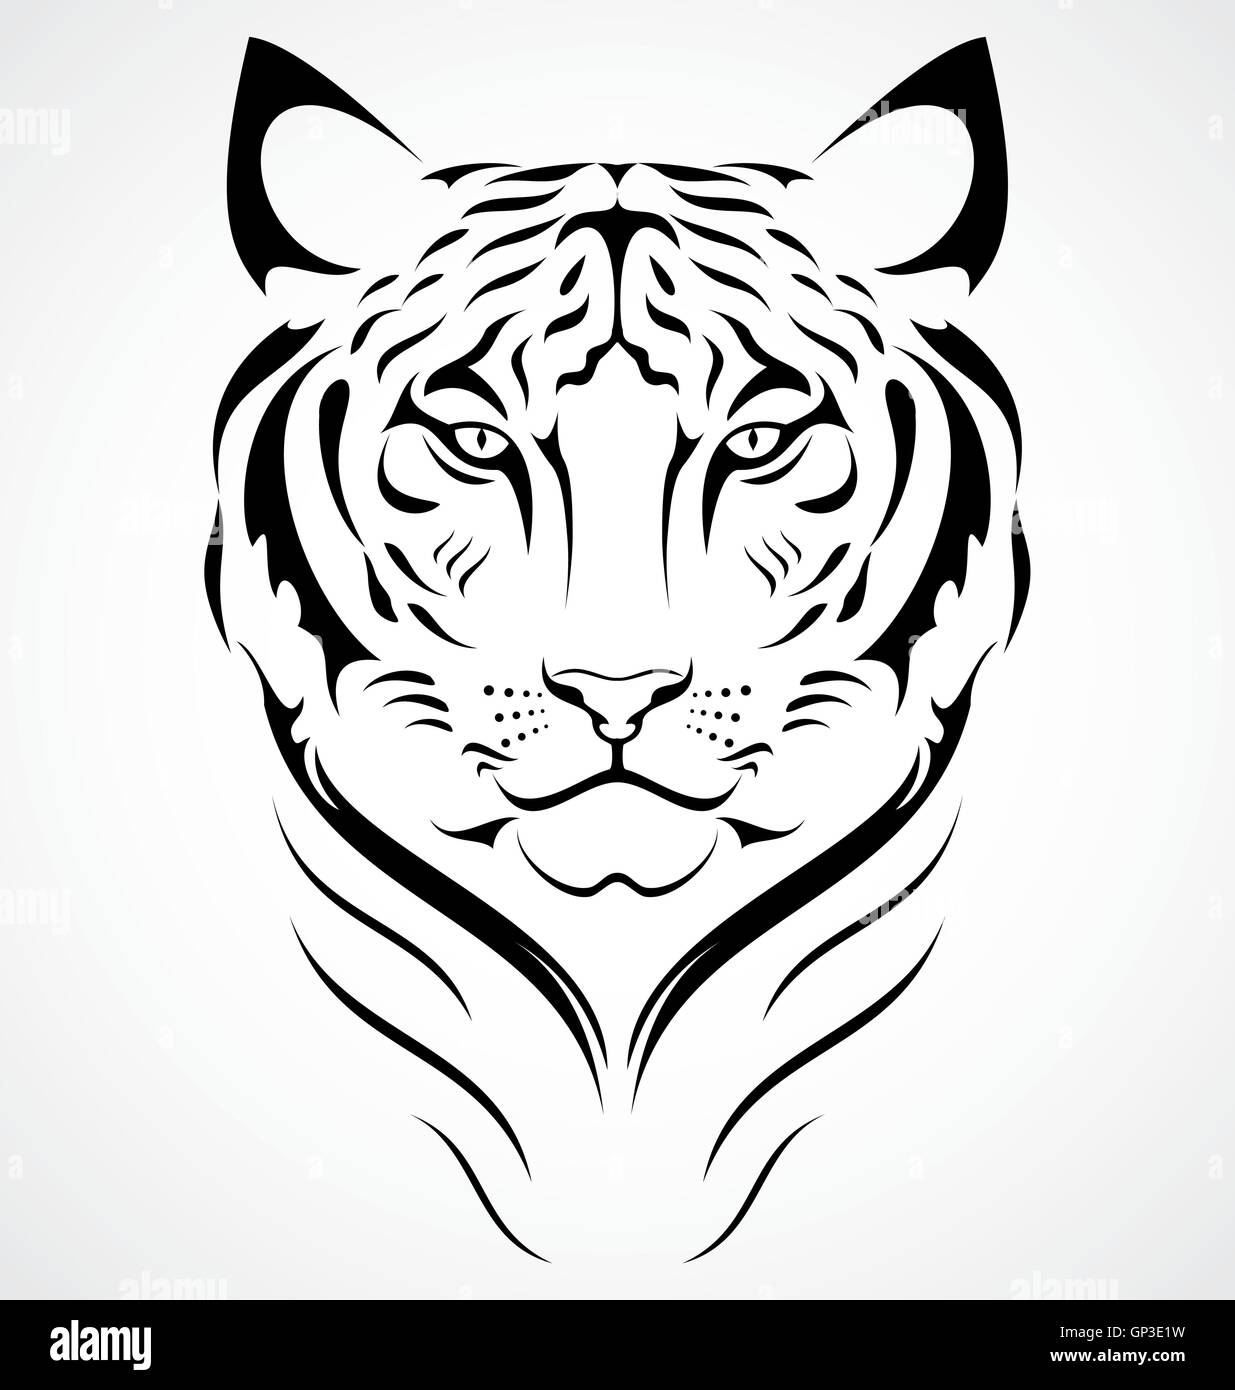 Bengal Tiger Tattoo Design Stock Vector Image & Art - Alamy